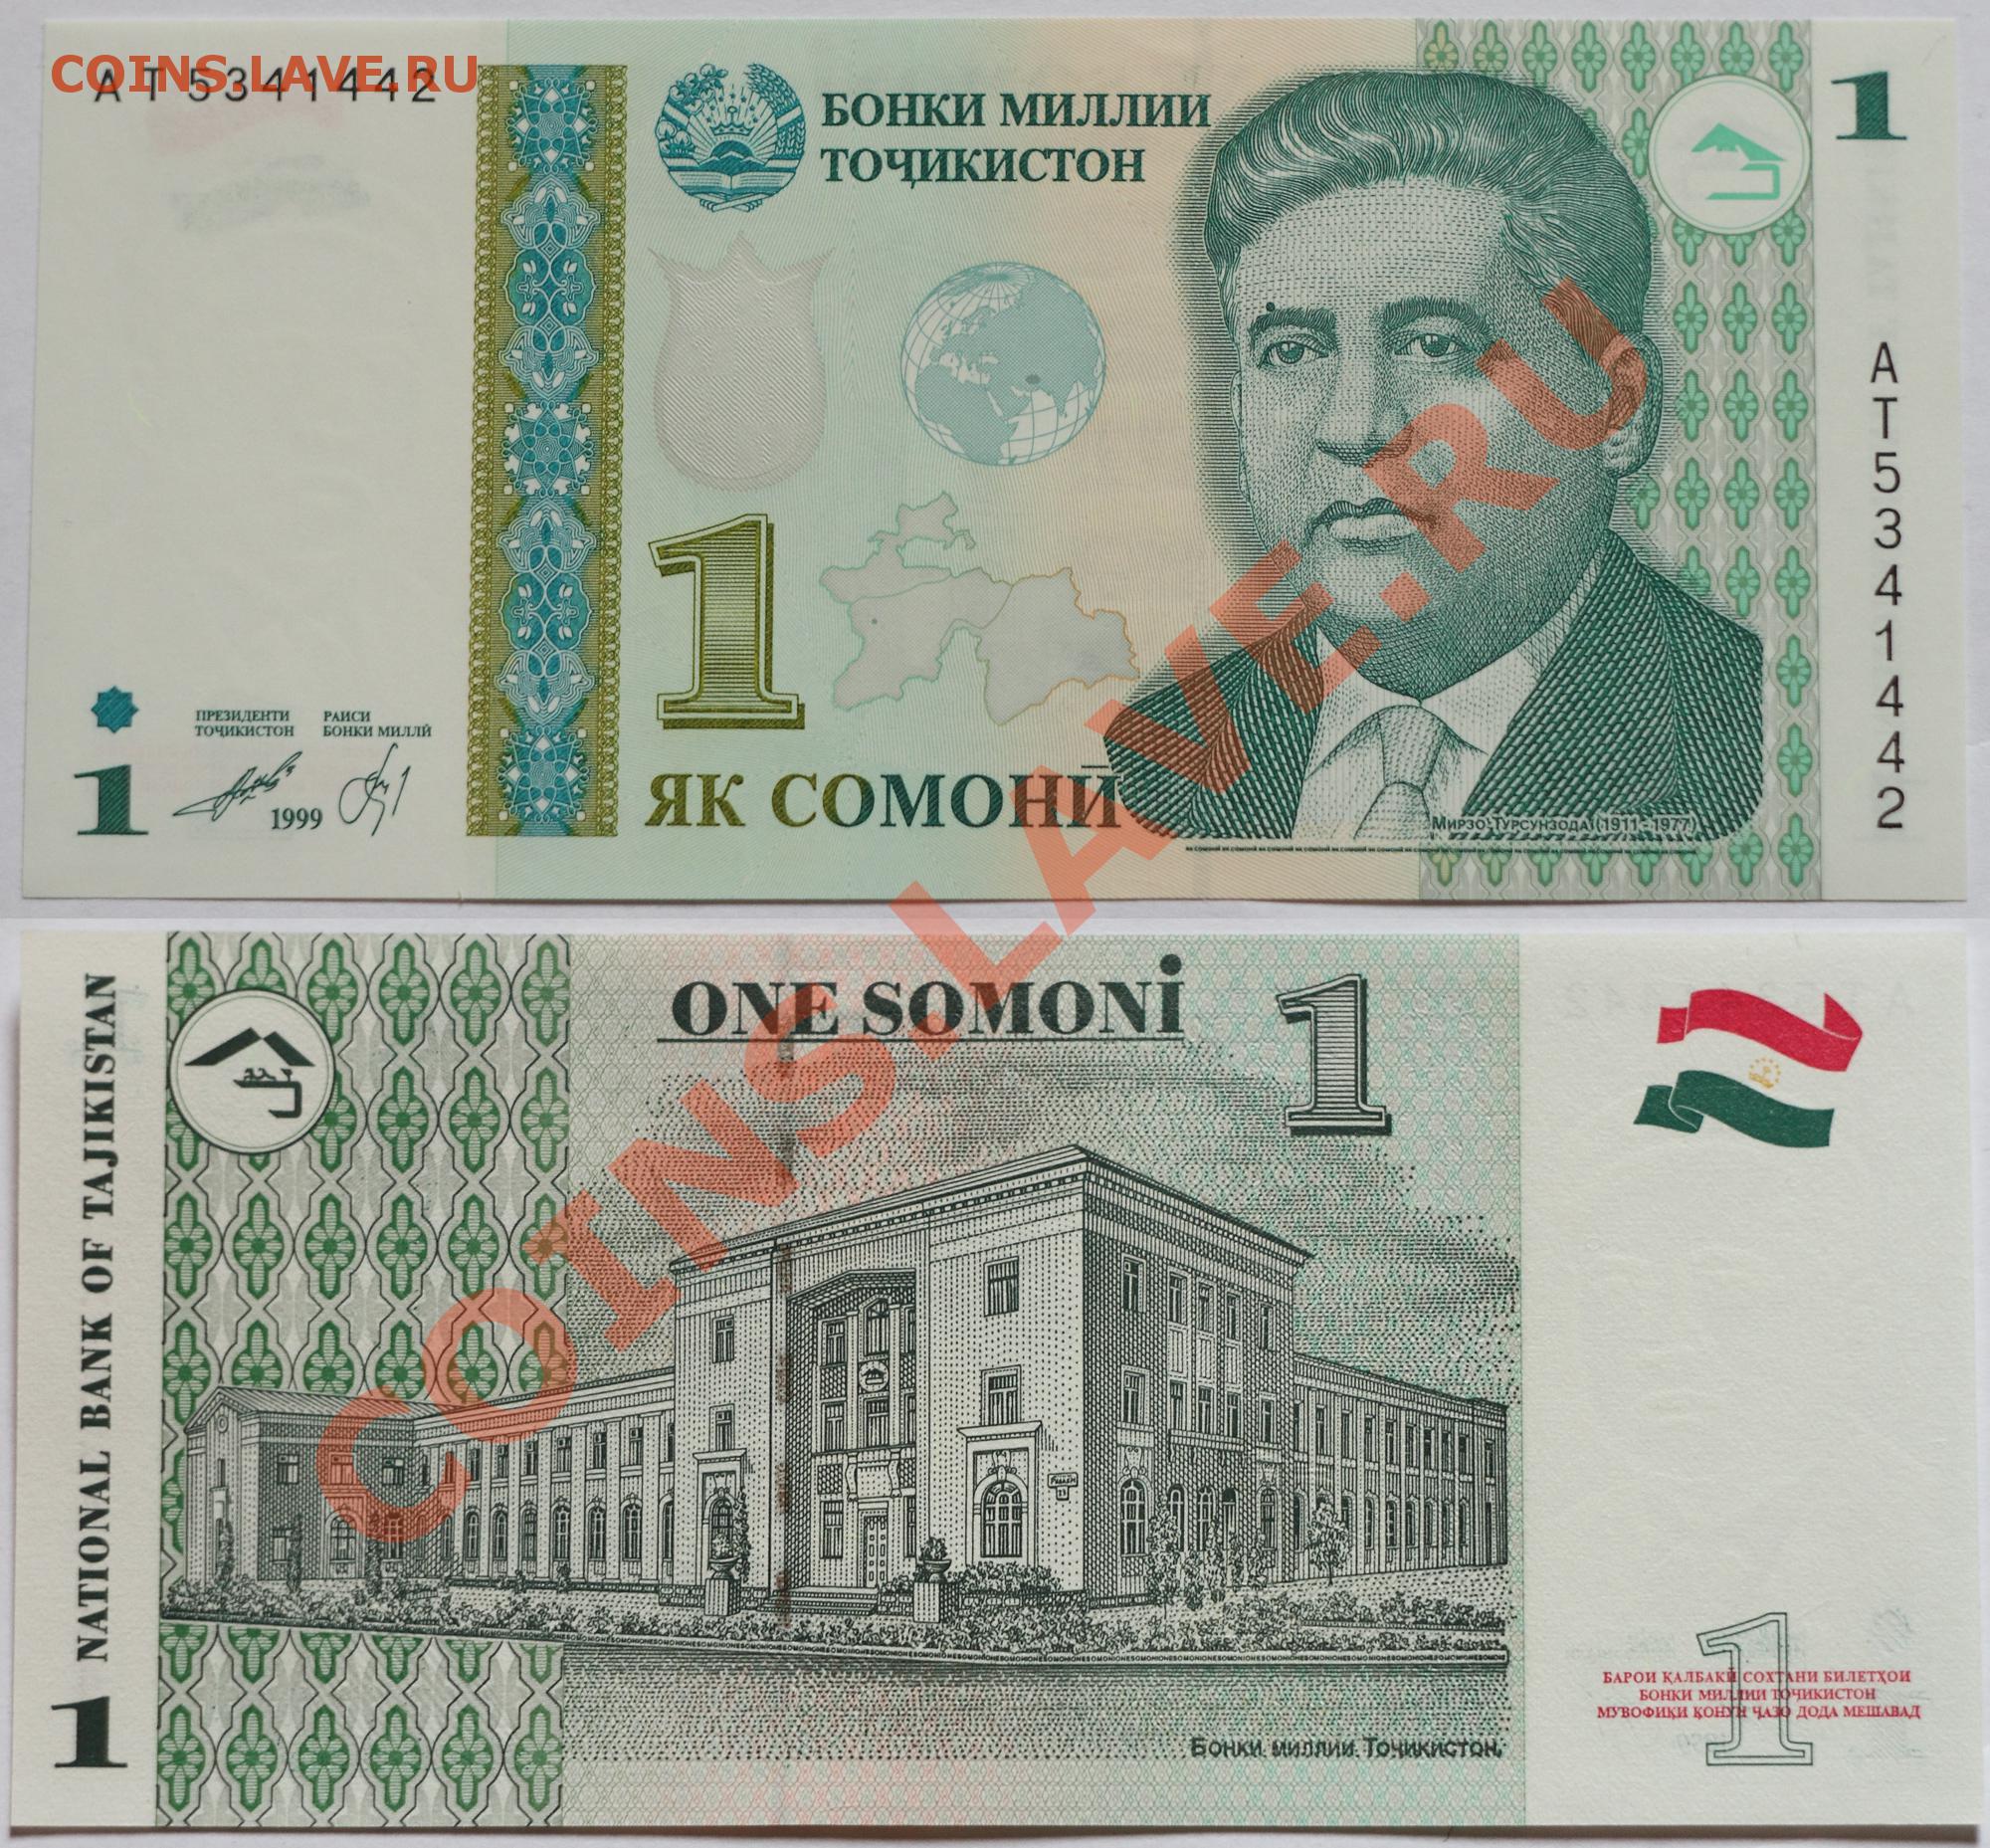 1 таджикский сомони. Купюры Таджикистана. 500 Сомони фото. 1000 Сомони. Банкноты Таджикистана 1994.